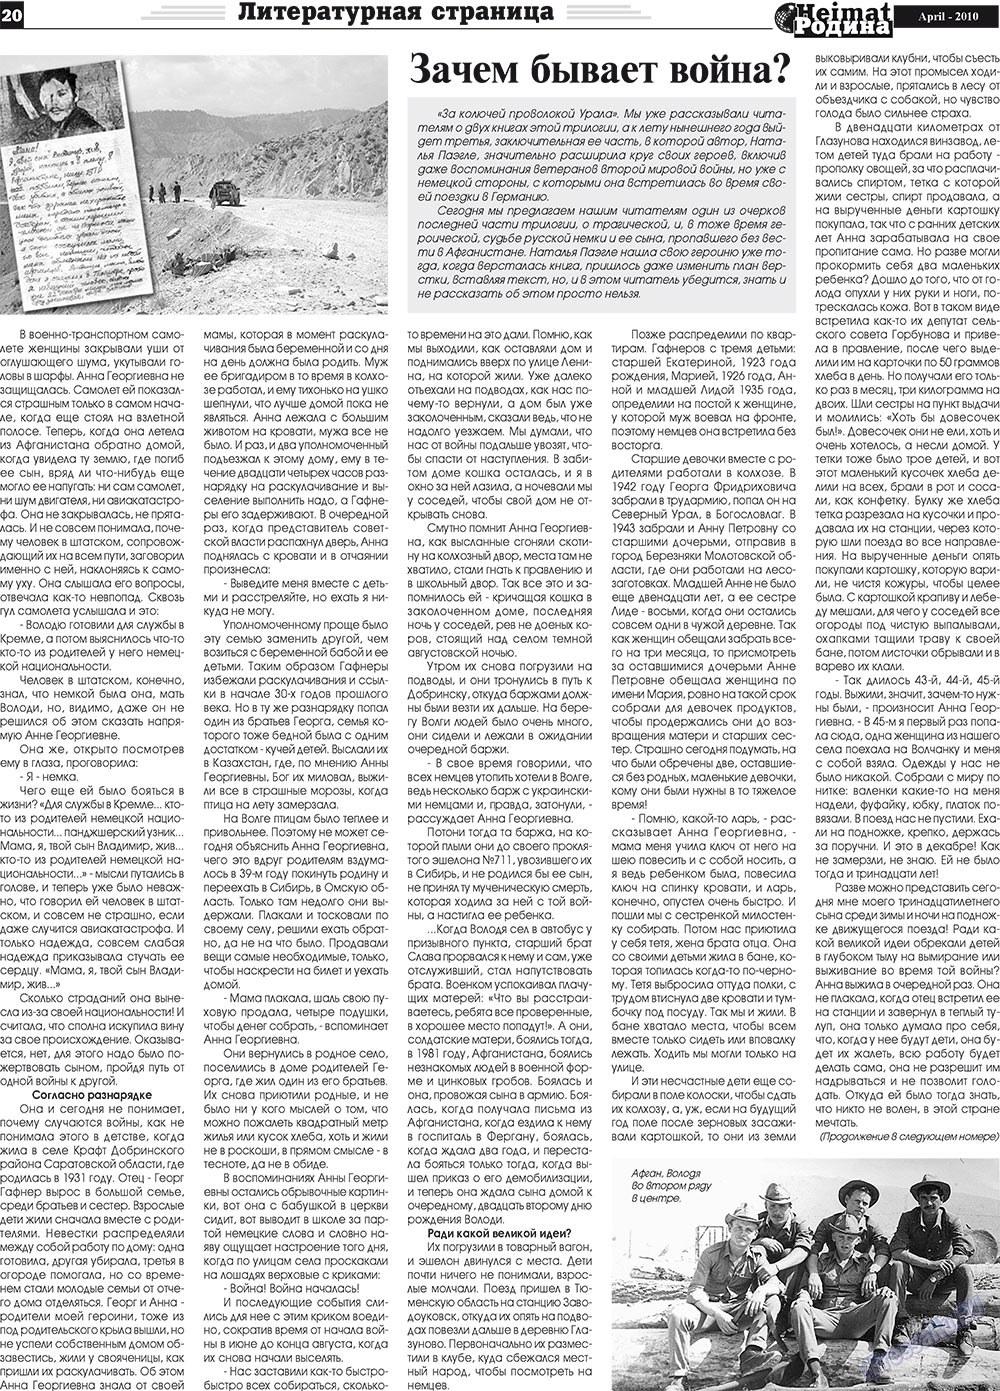 Heimat-Родина (газета). 2010 год, номер 4, стр. 20